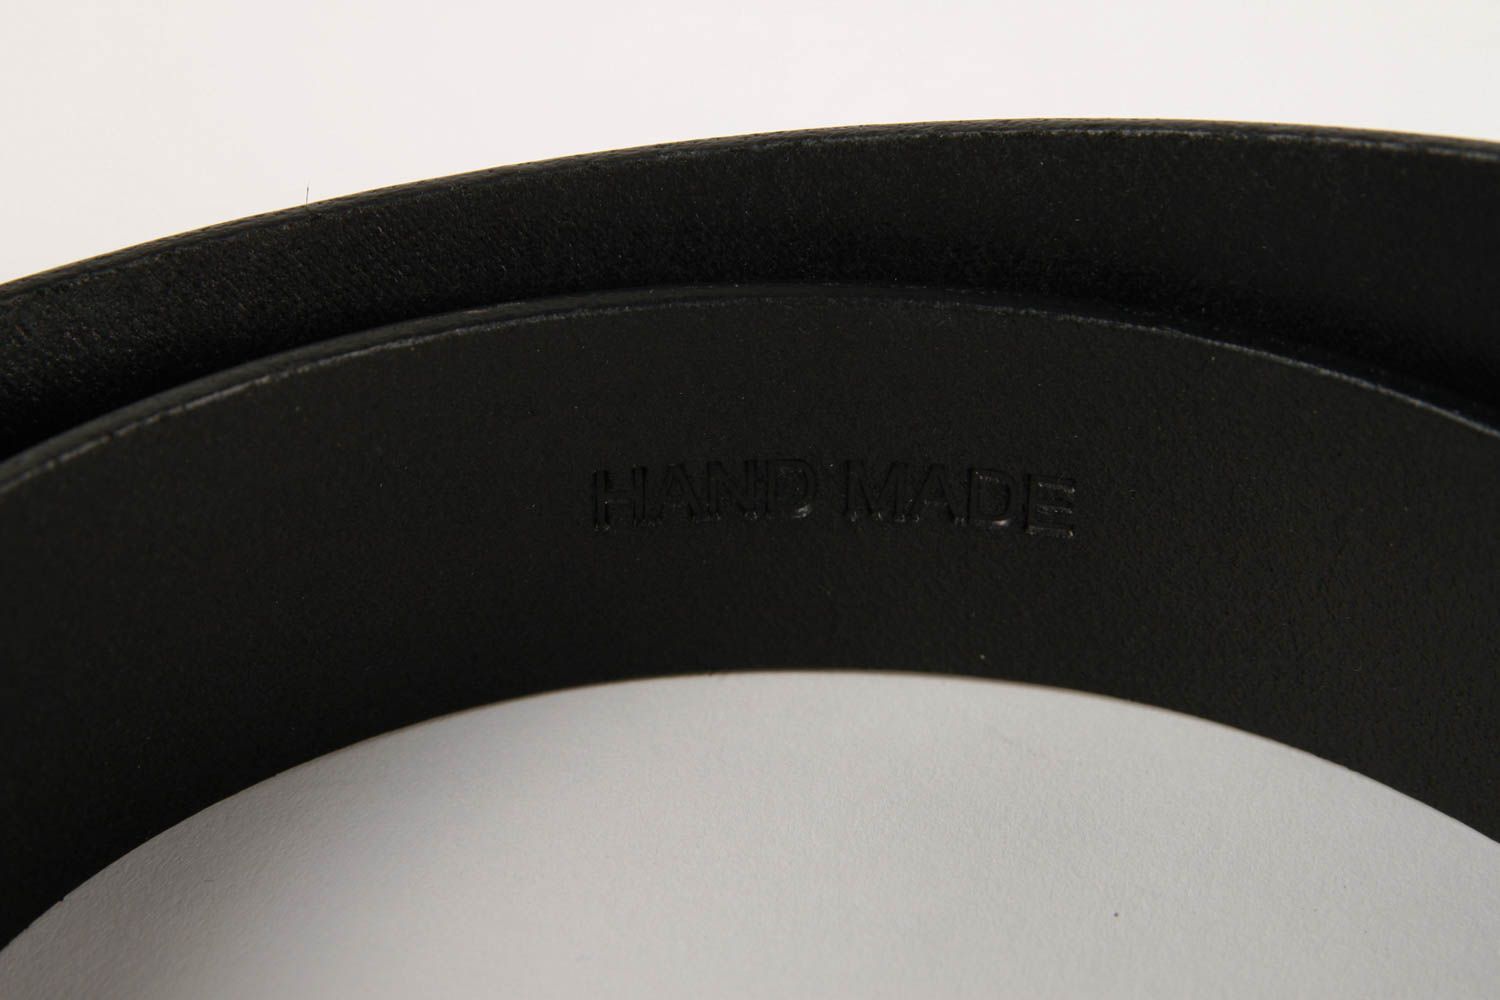 Handmade belt designer belt for men gift ideas leather accessory gift for him photo 5